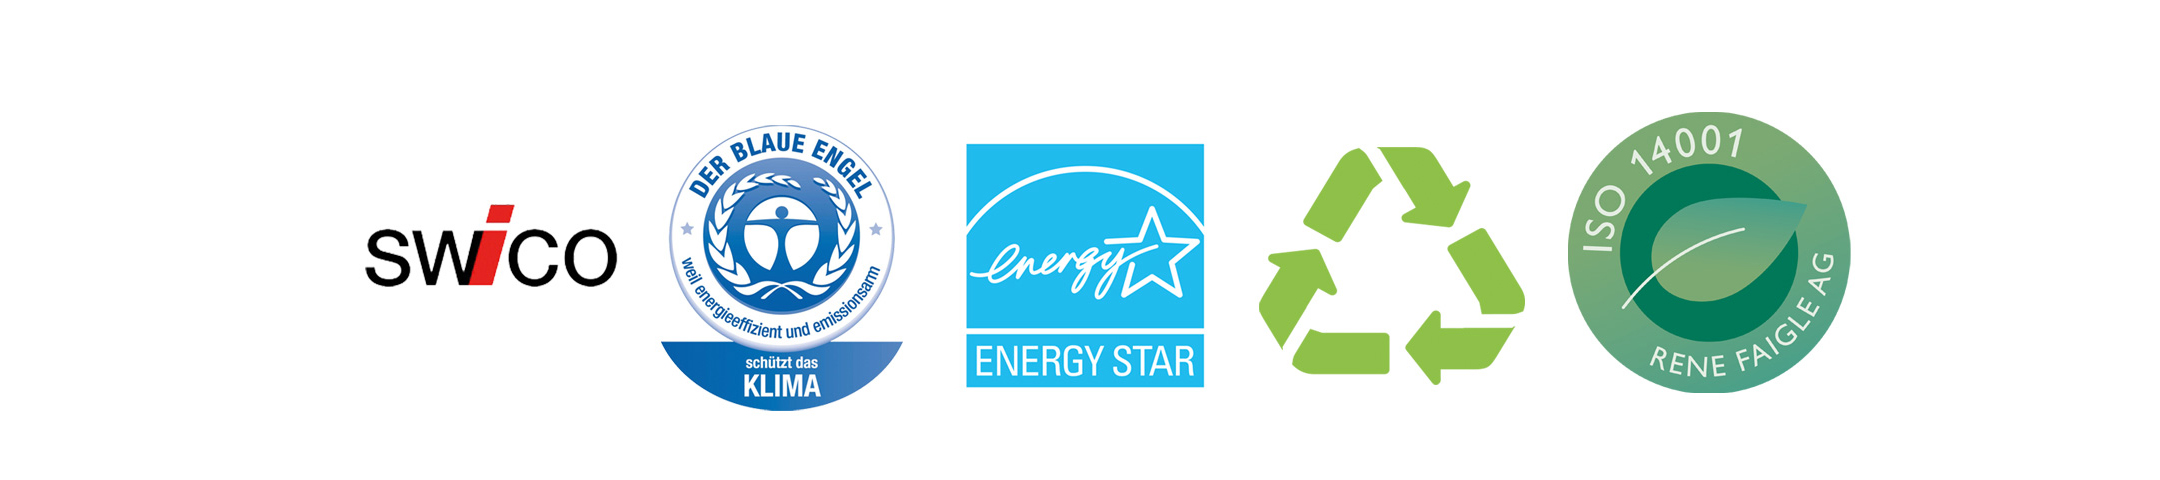 swico-wirtschaftsverband-ICT-und-online-branche-der-blaue-engel-guetesiegel-fuer-klimaschutz-energy-star-umweltzeichen-fuer-energiesparende-drucker-recycling-von-iso-1400